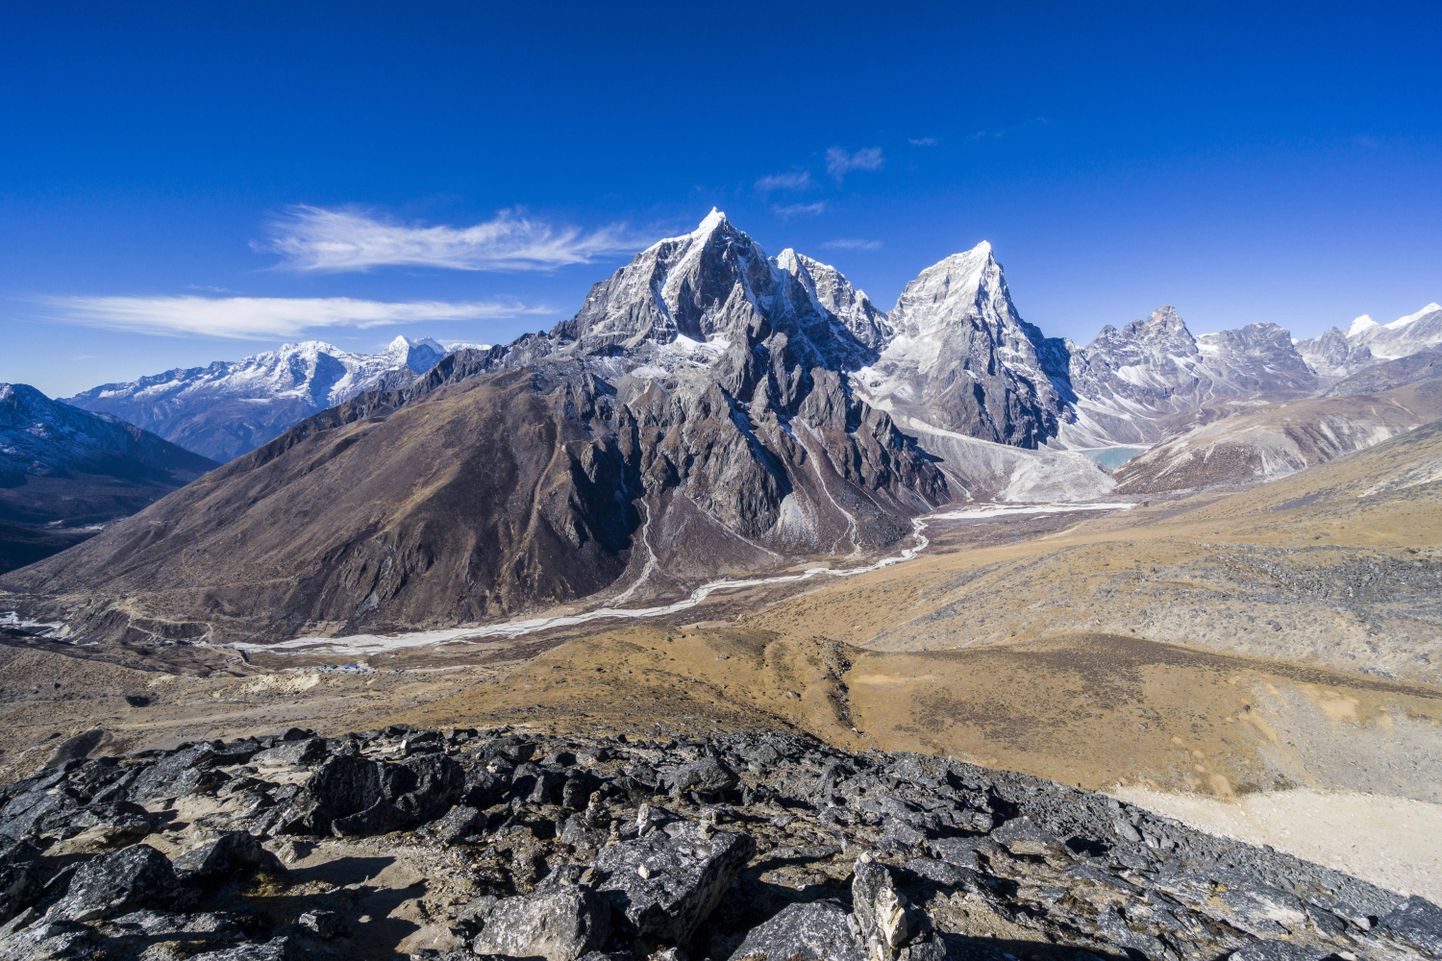 Everestile viiv maailma kõrgeim Khumbu liustik Nepaalis. Nüüd plaanivad teadlased viia seal läbi enneolematu 200 meetri sügavuse jääpuurimise.